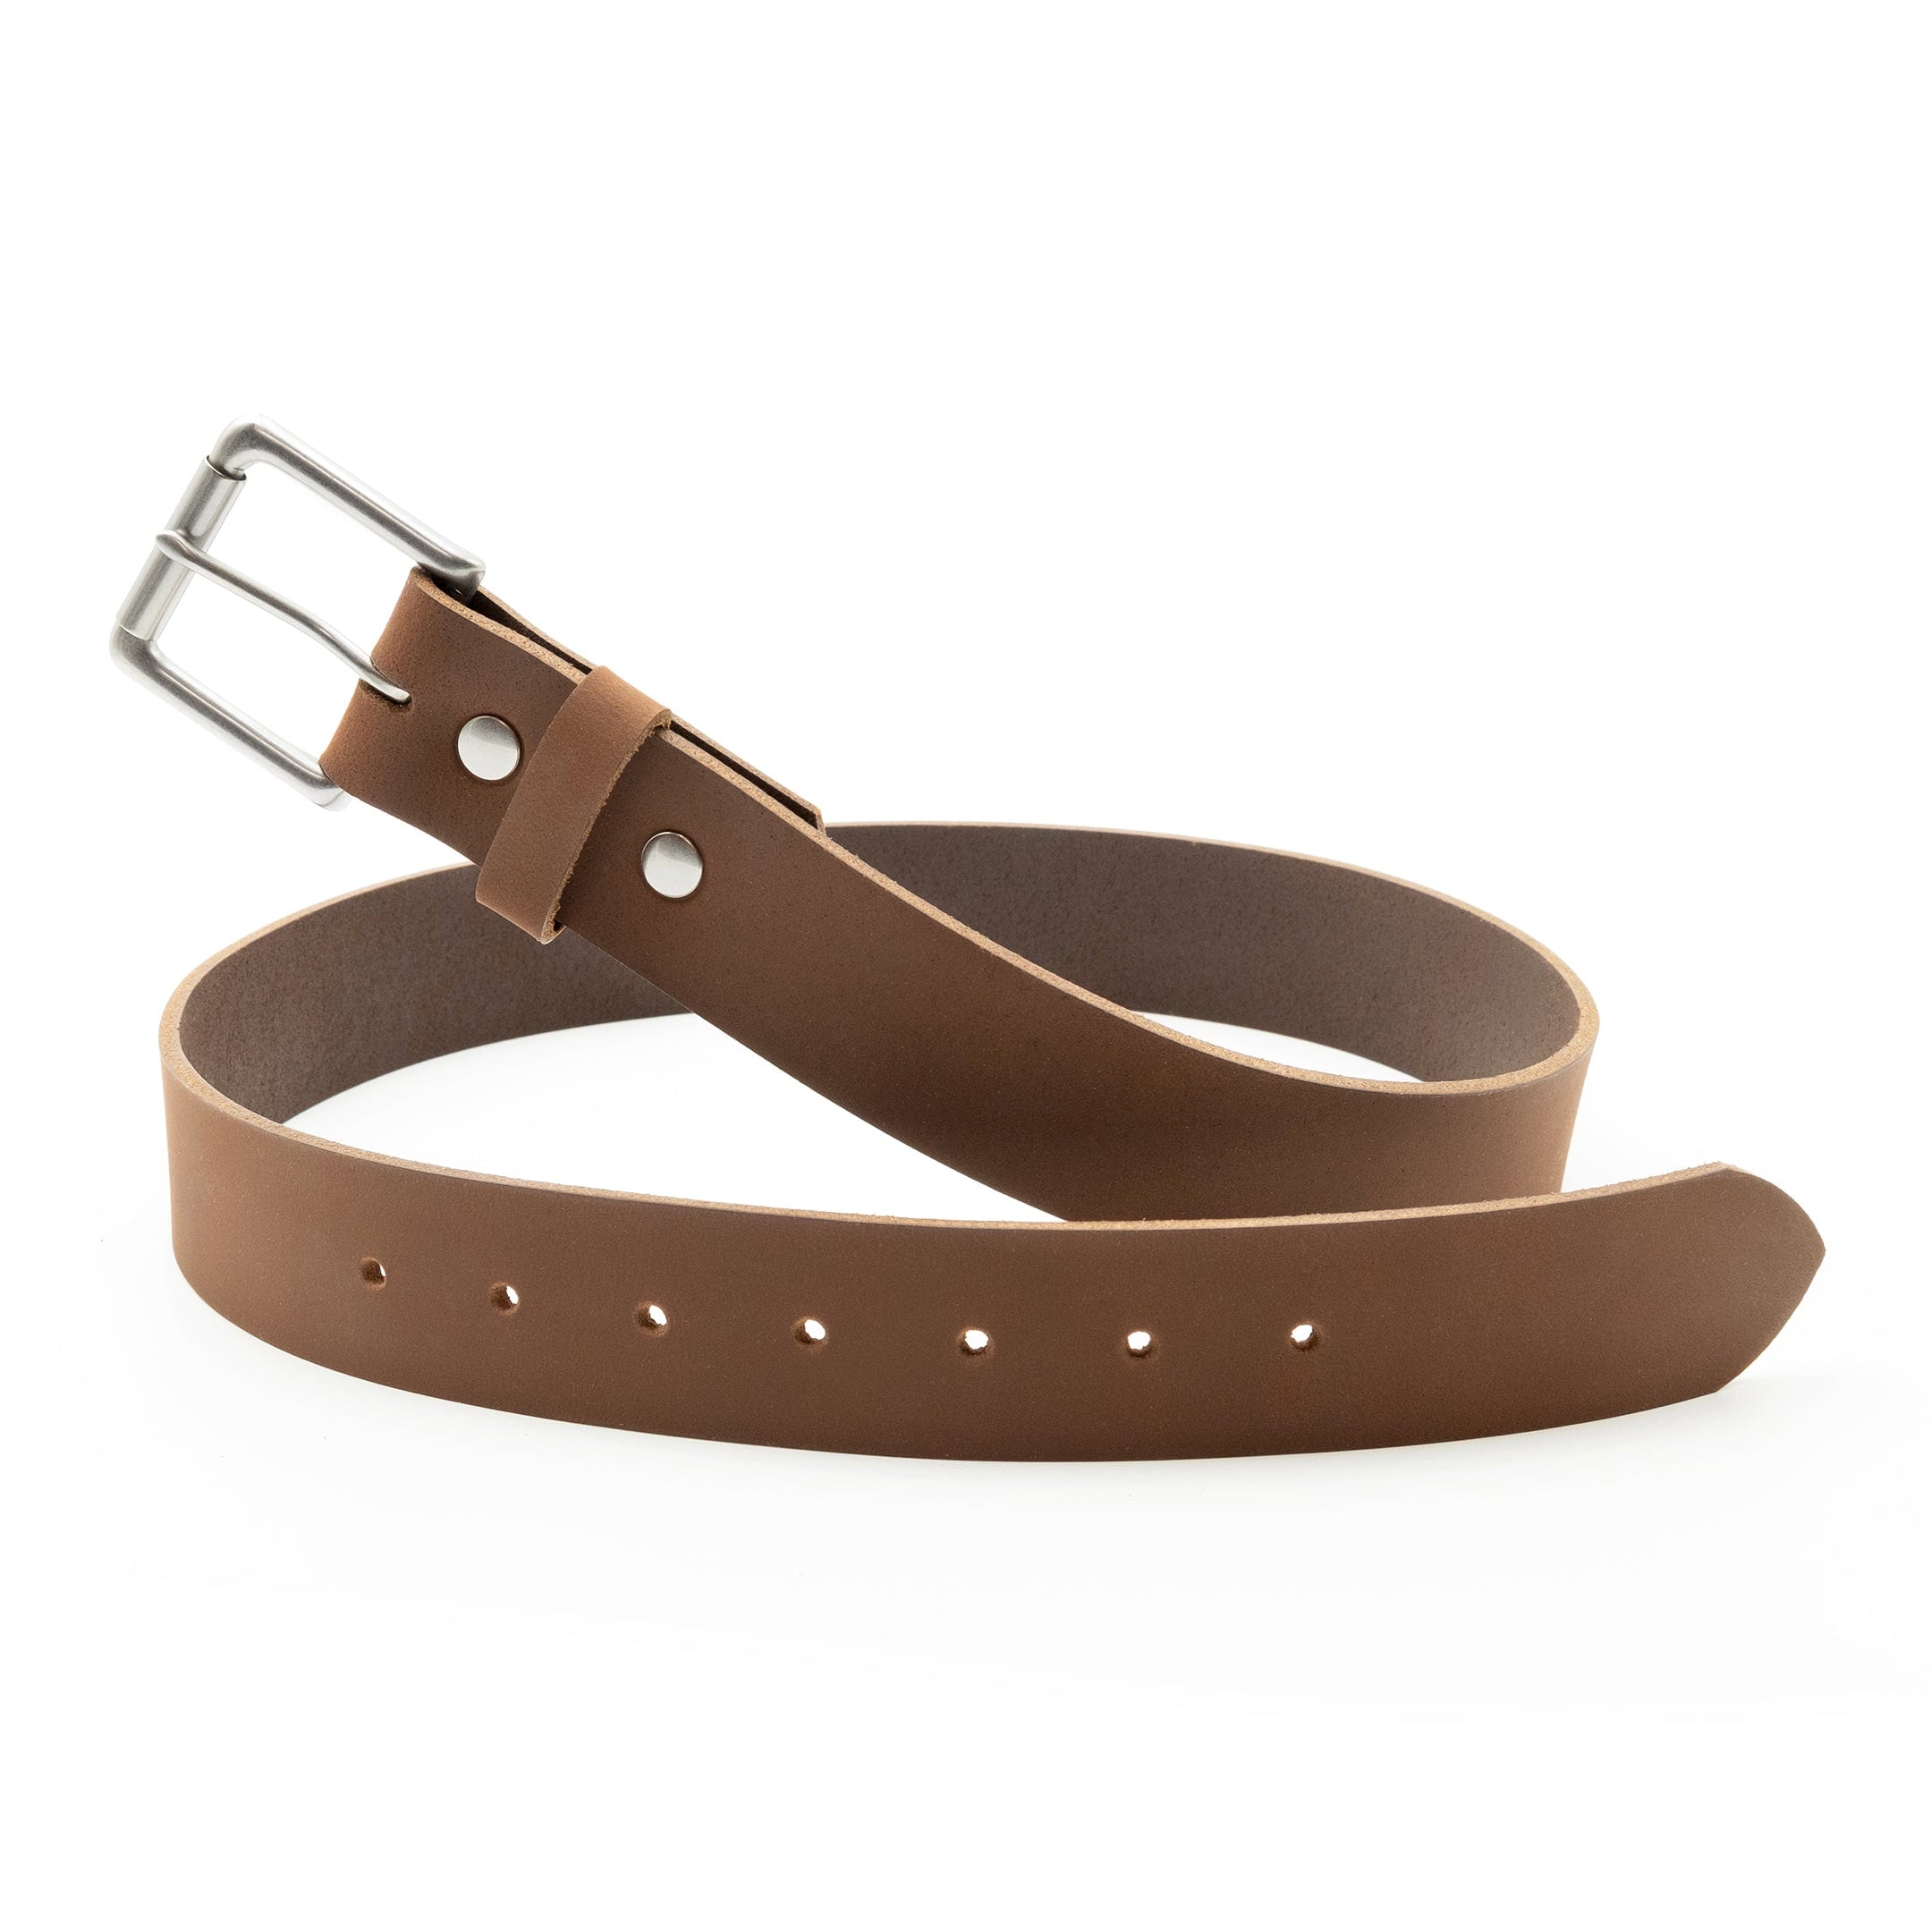 Matte brown leather belt